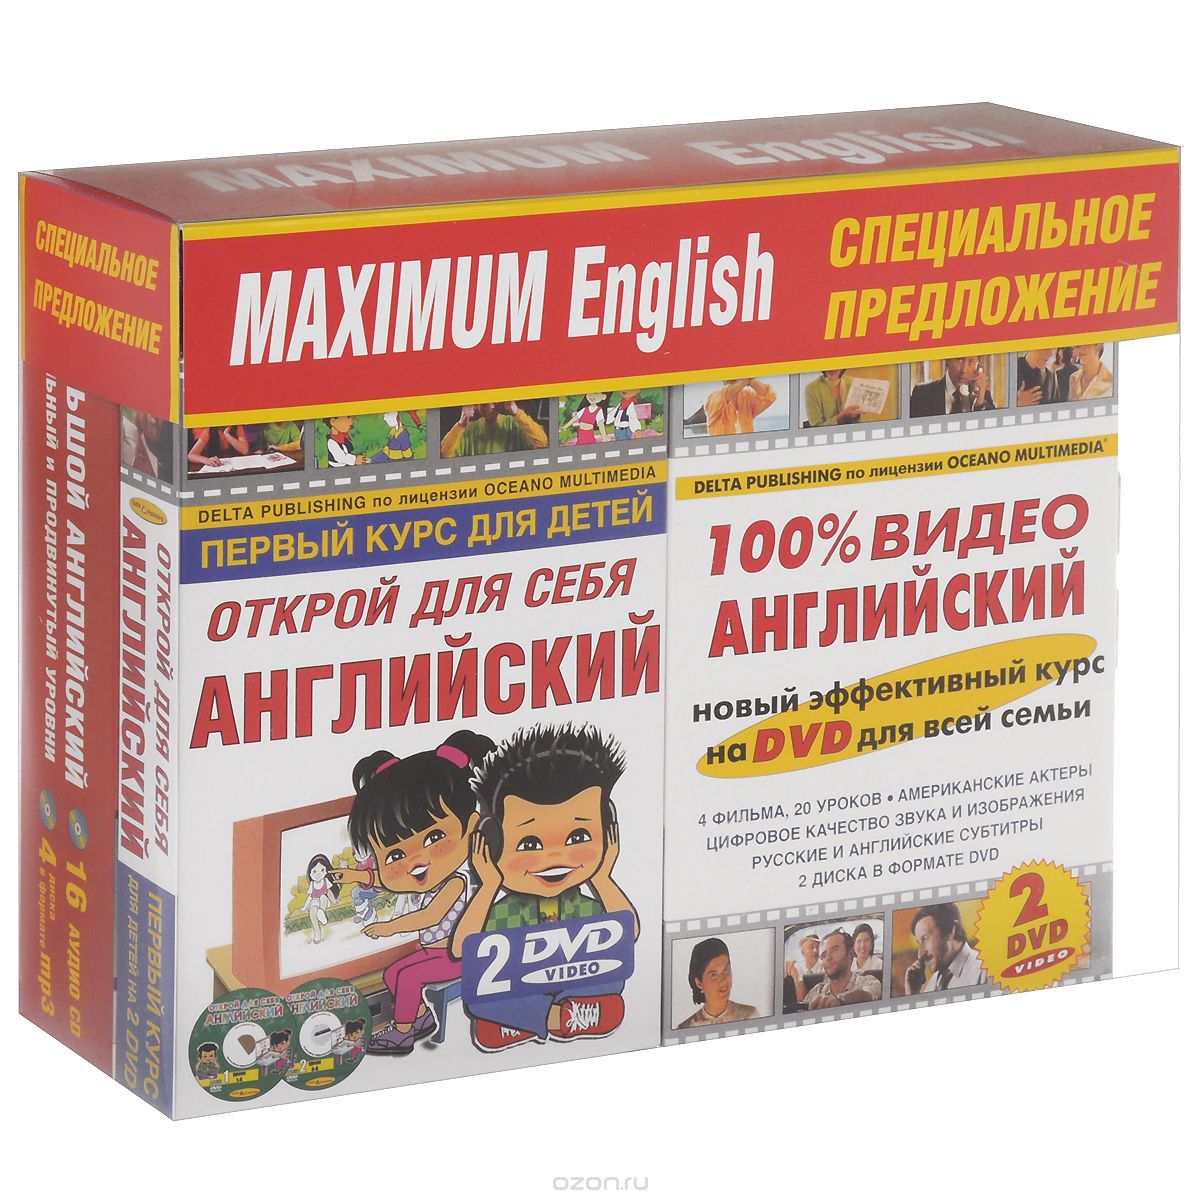 Maximum English. Комплект для всей семьи (комплект из 3 книг + 20 CD, 4 DVD)